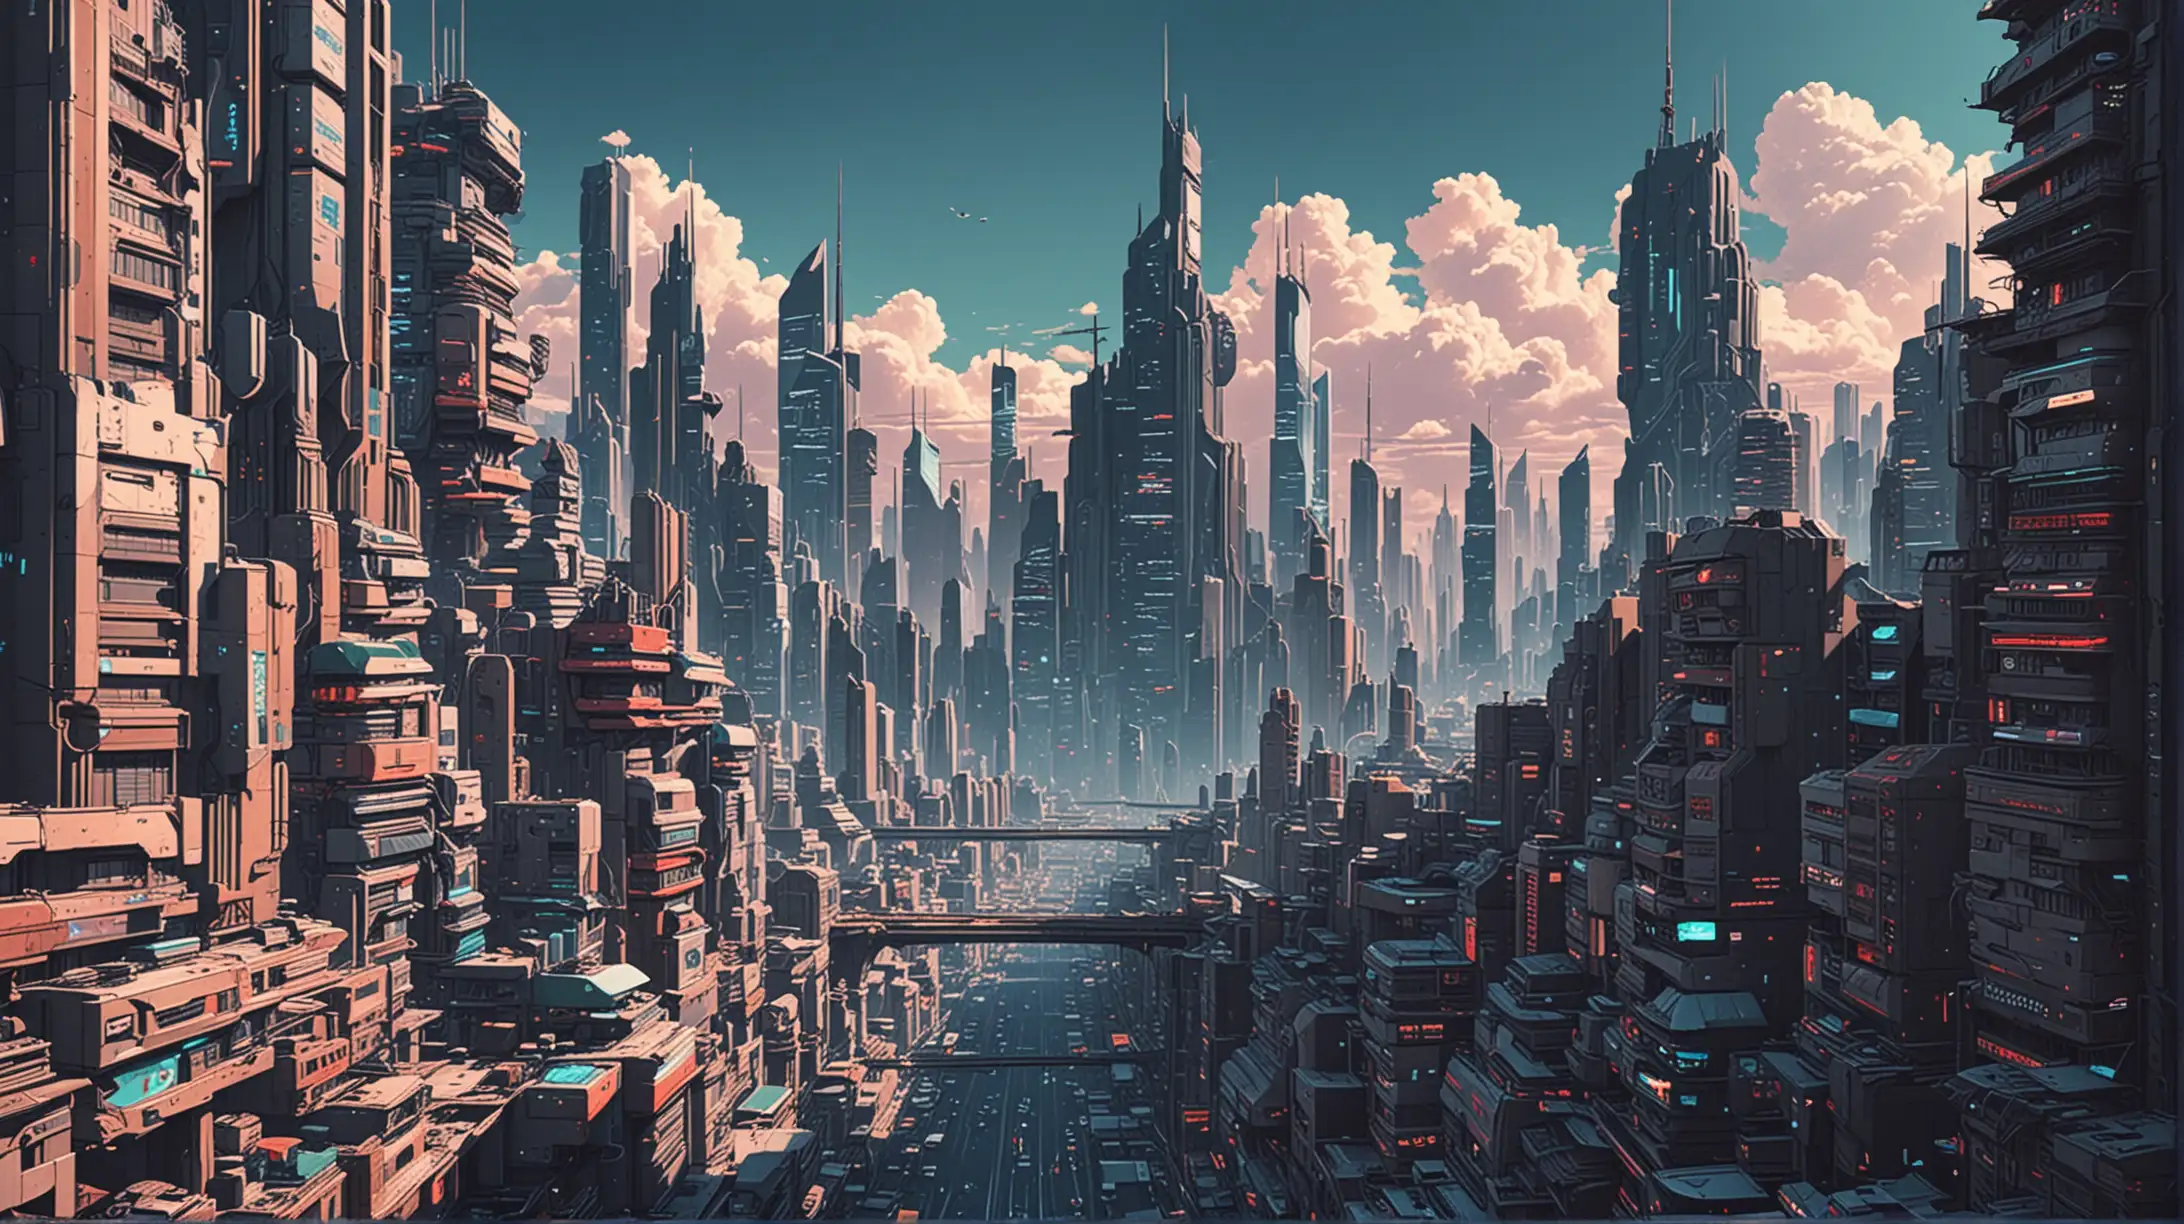 Generate futuristic cityscape - in 90s anime style